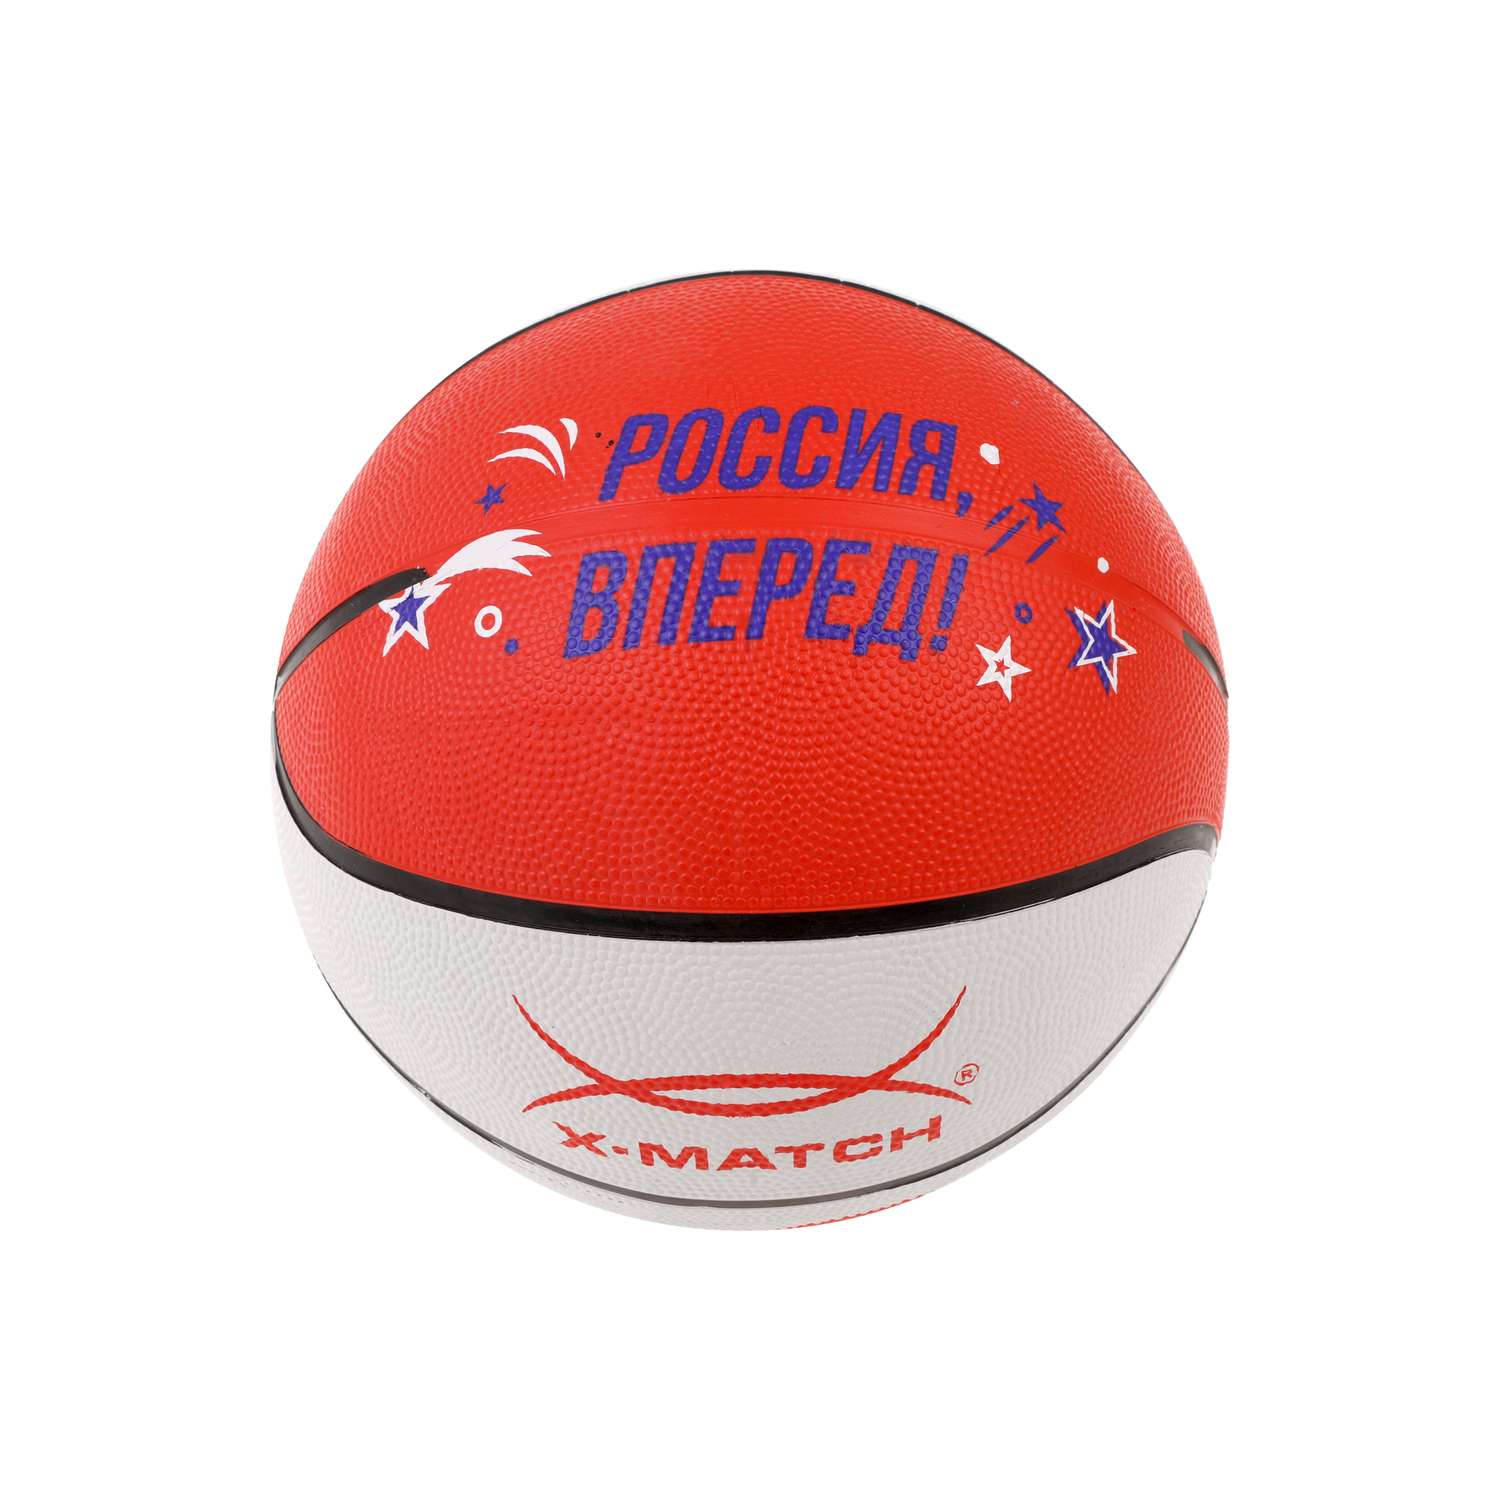 Мяч баскетбольный X-Match размер 7 резина - фото 3